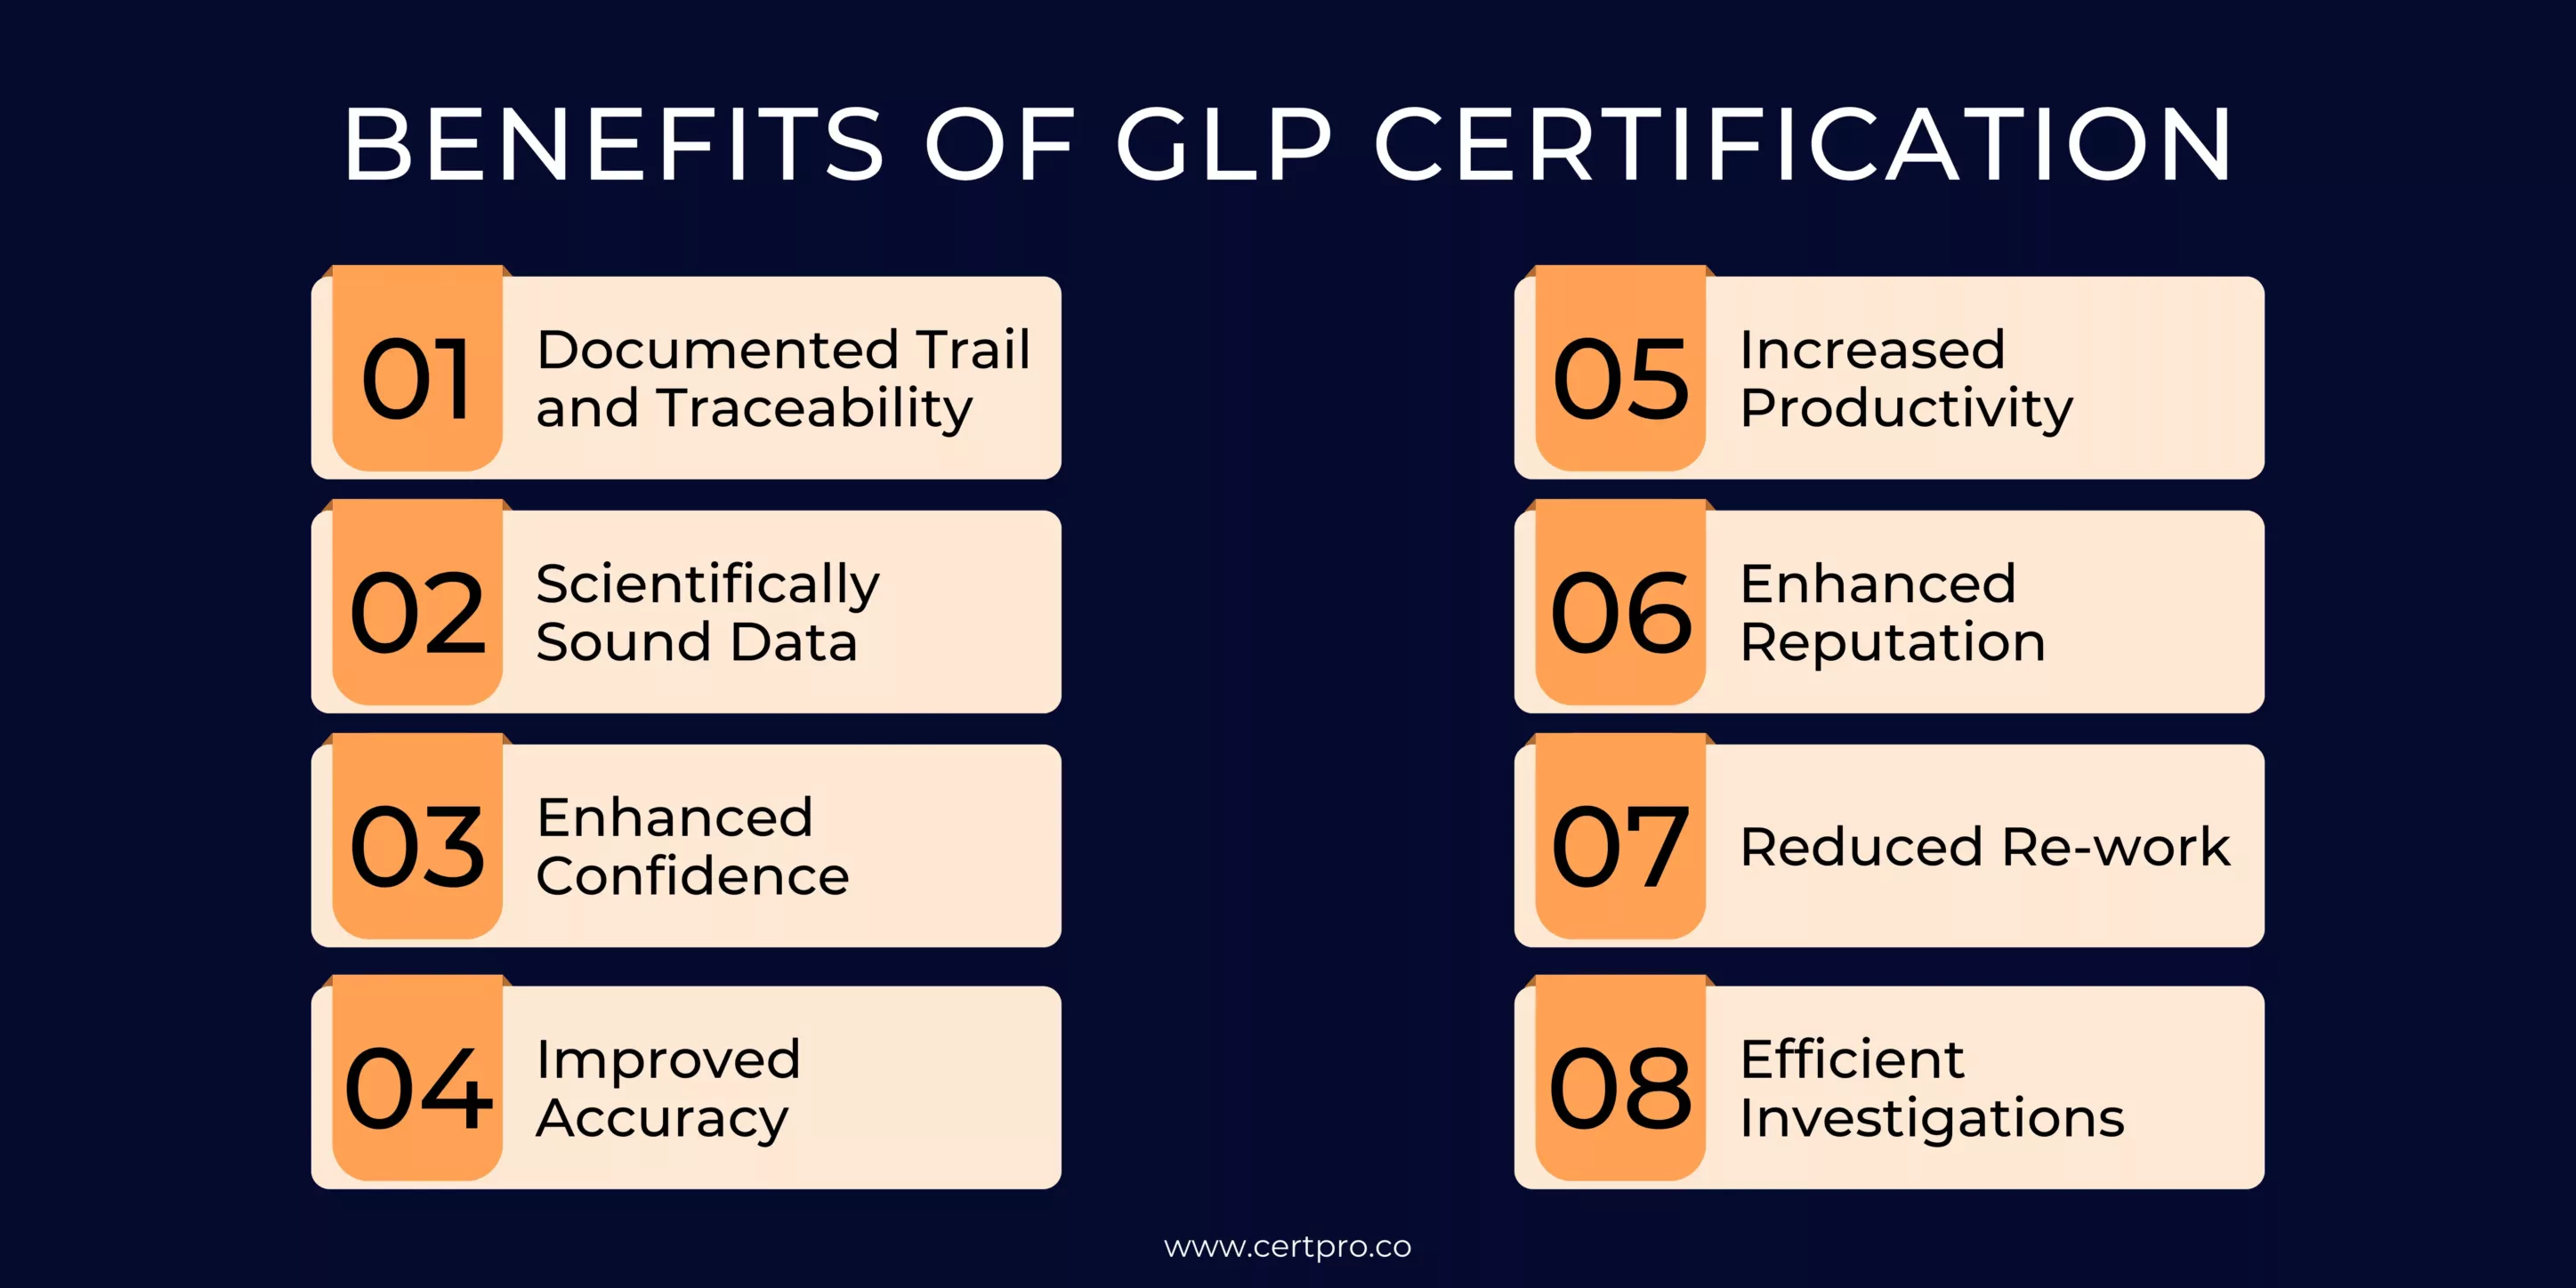 Benefits of GLP